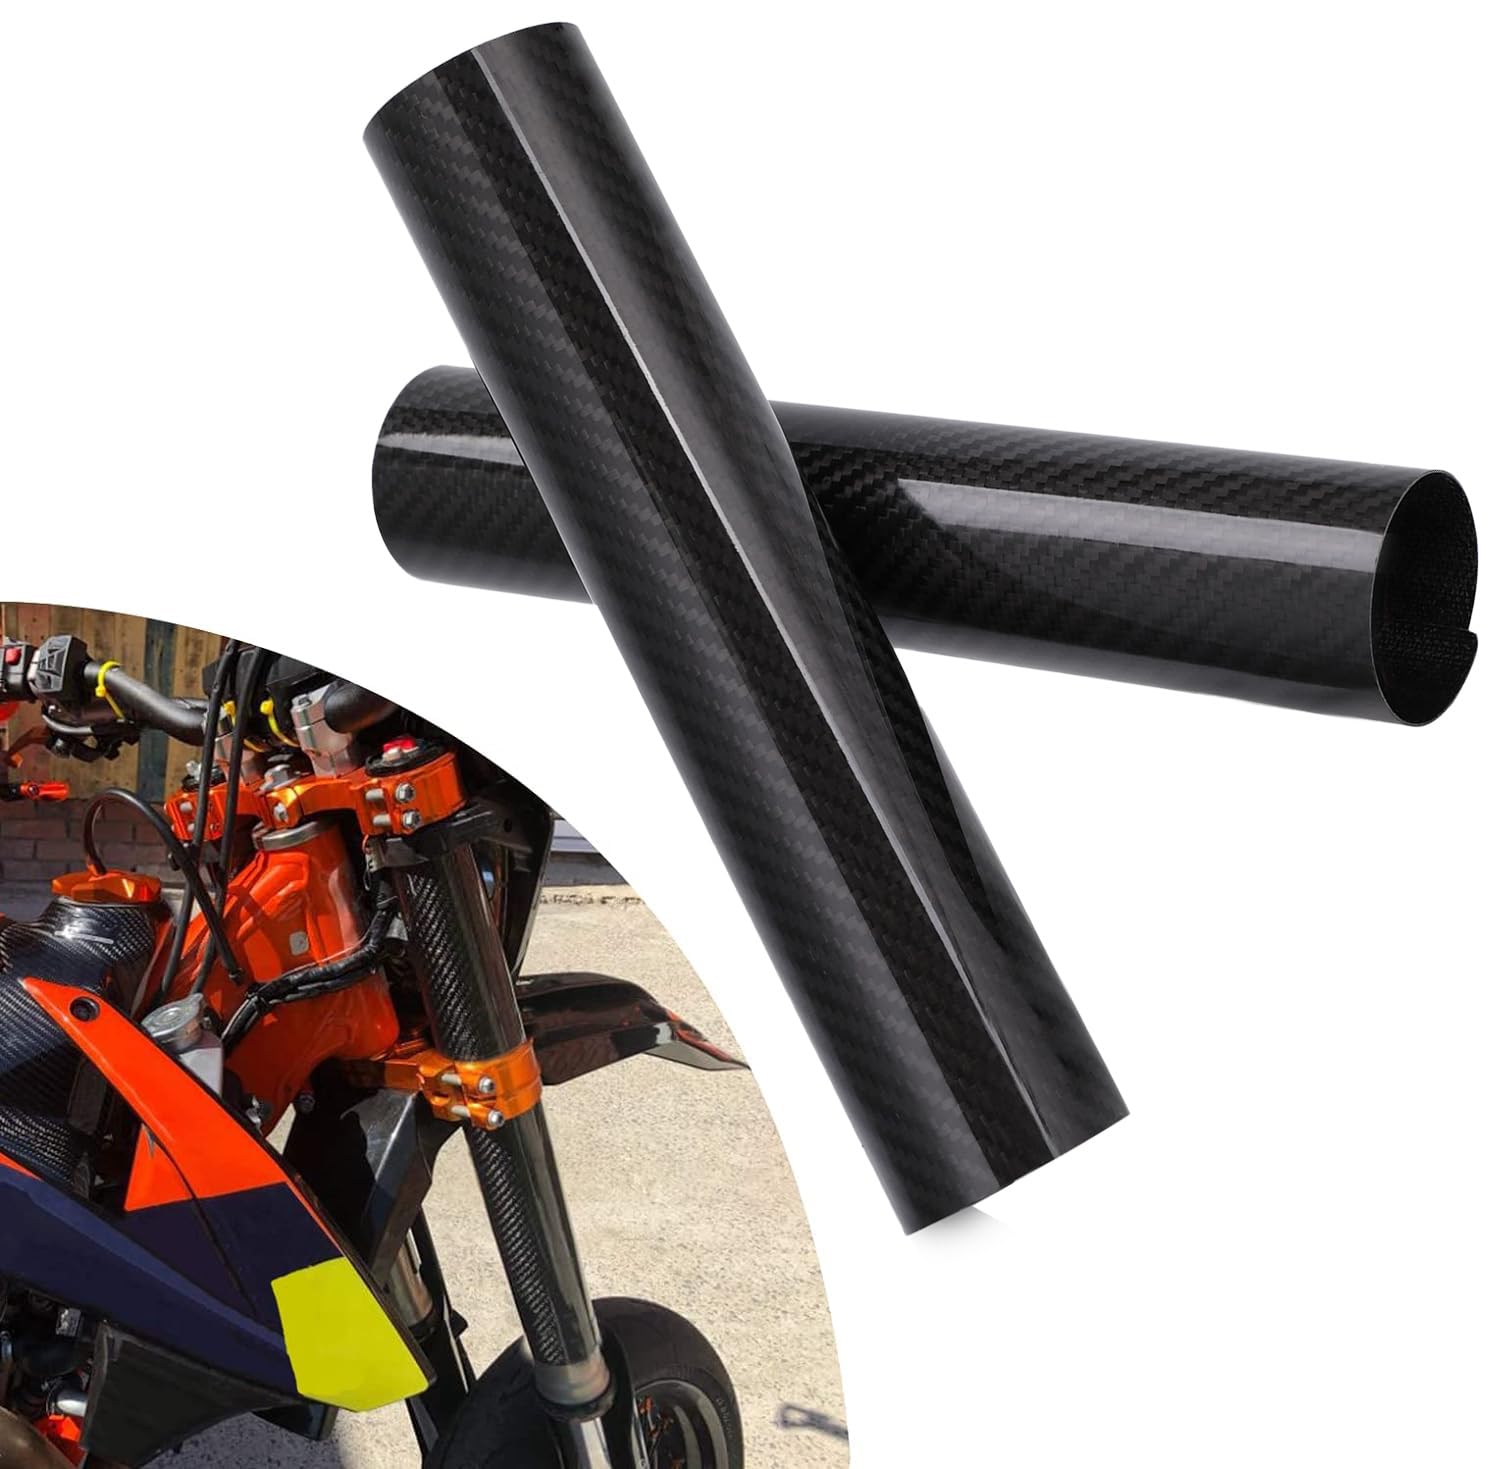 BIUGERCN 248MM Motorrad Gabel Protector Dirt Bike Kohlefaser Frontabdeckung Wrap Stoßdämpfer für die meisten Motorrad Motocross Dirt Pit Bike von BIUGERCN